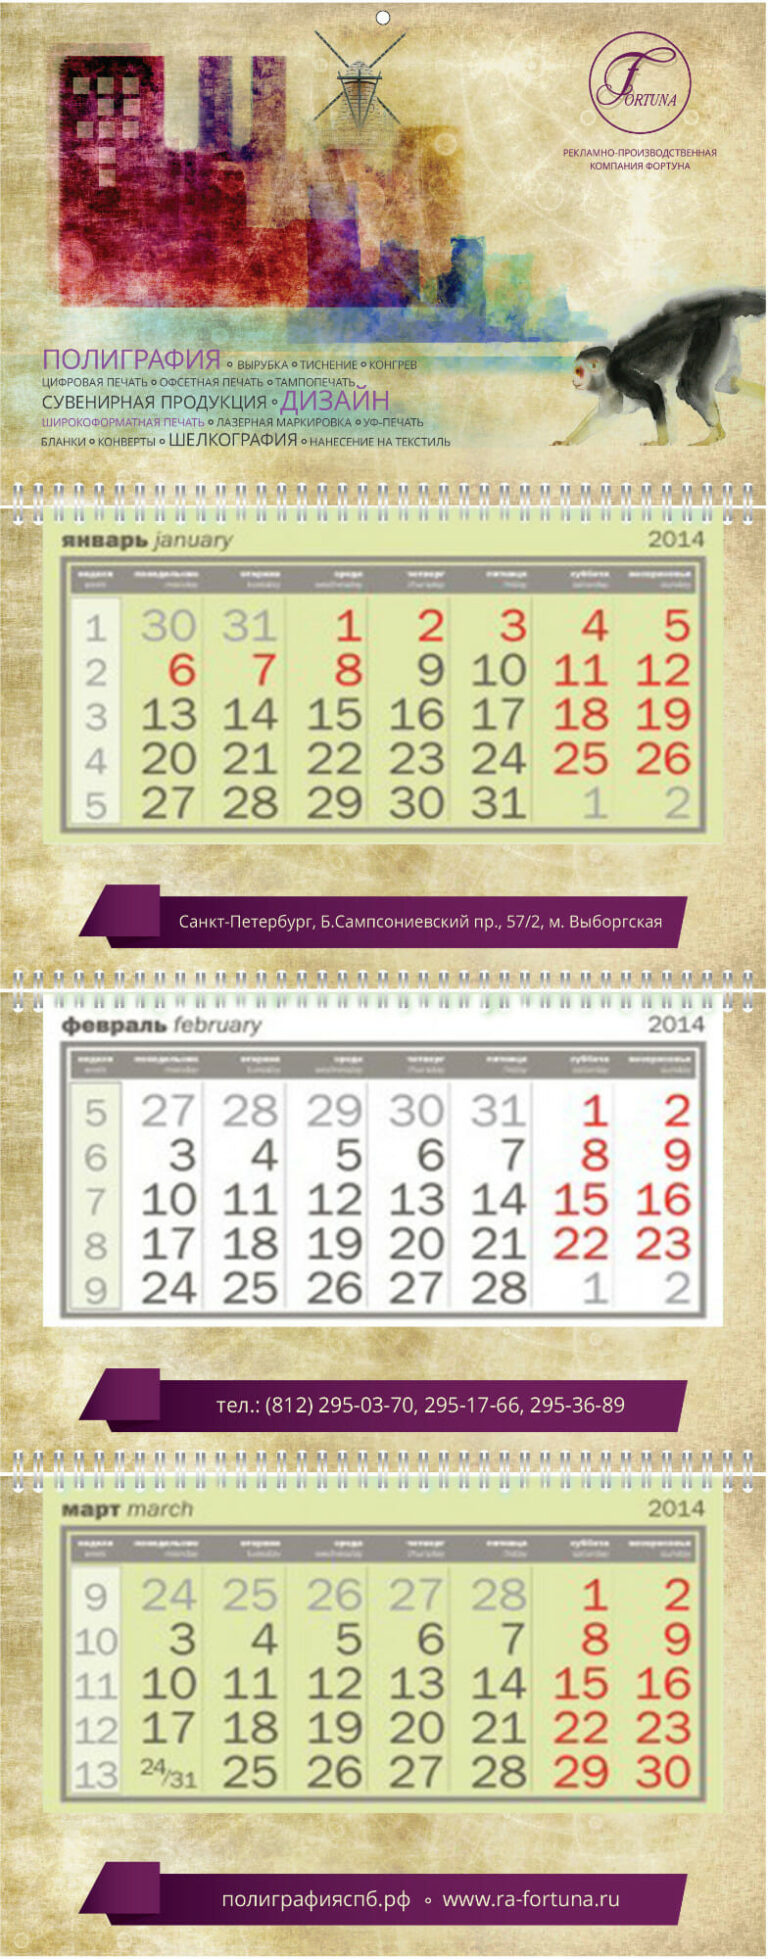 пример настенного календаря